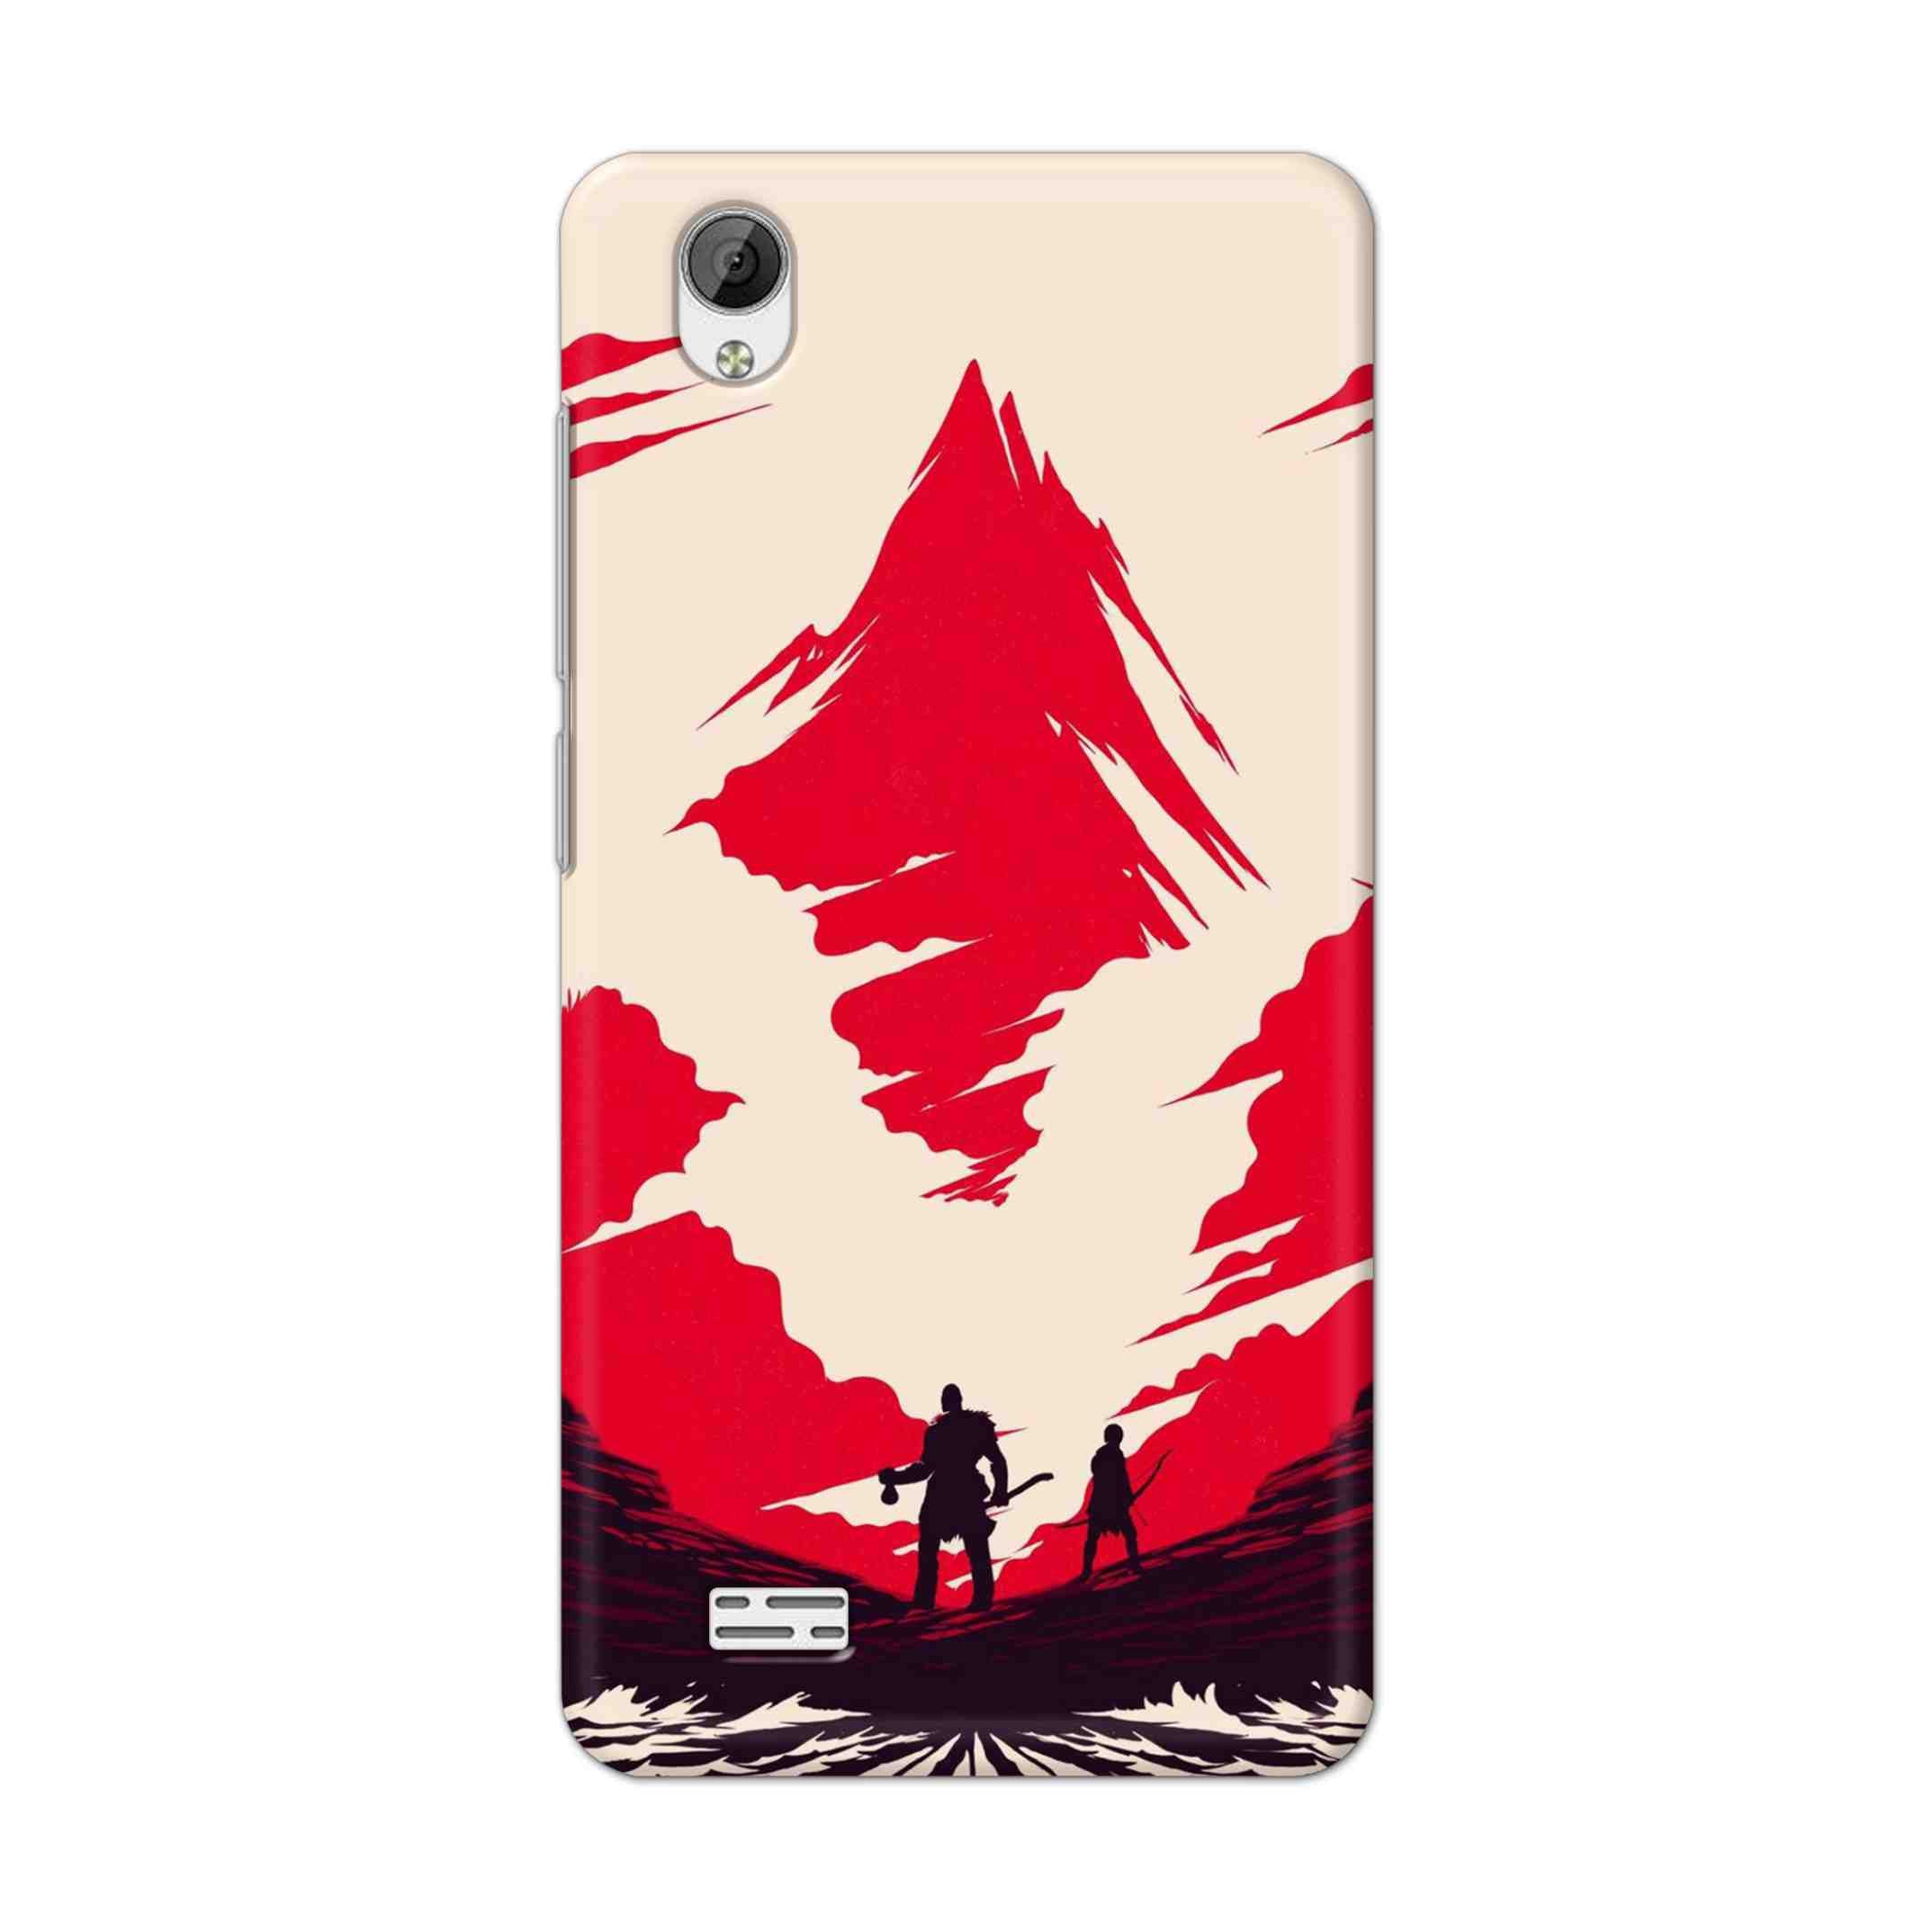 Buy God Of War Art Hard Back Mobile Phone Case Cover For Vivo Y31 Online